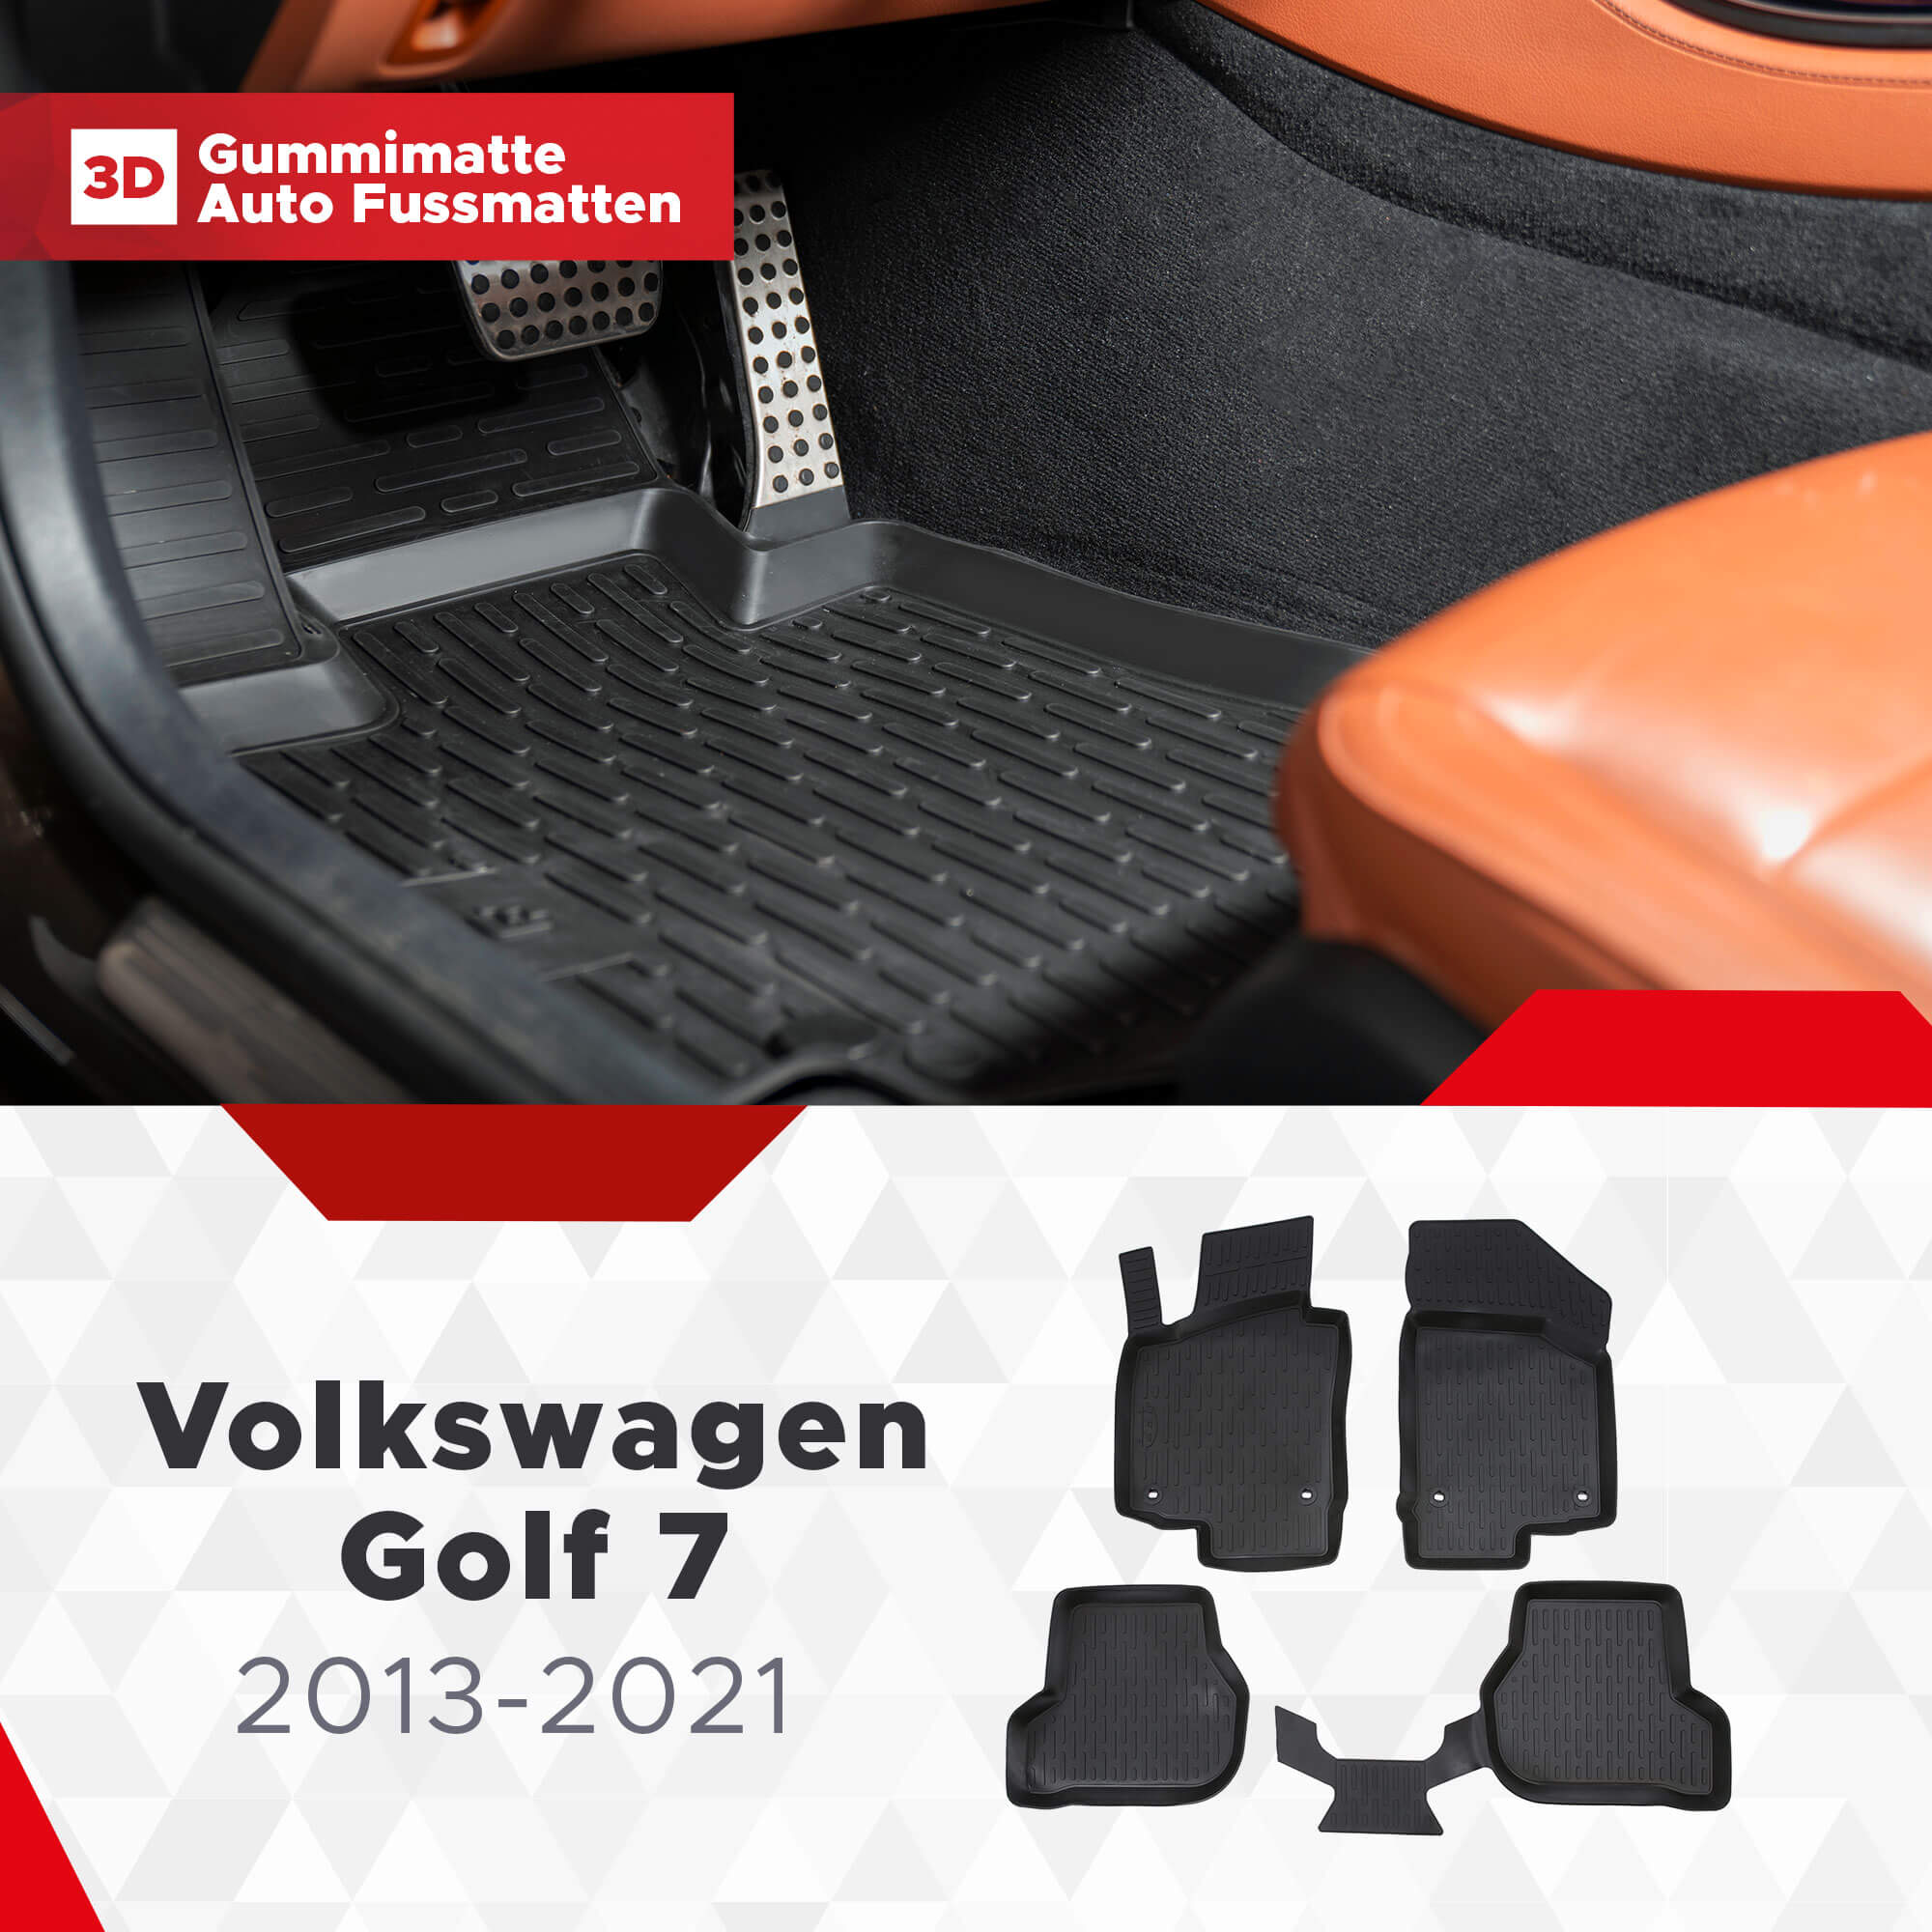 VW Golf VII Variant Fußmatten fürs Auto online kaufen